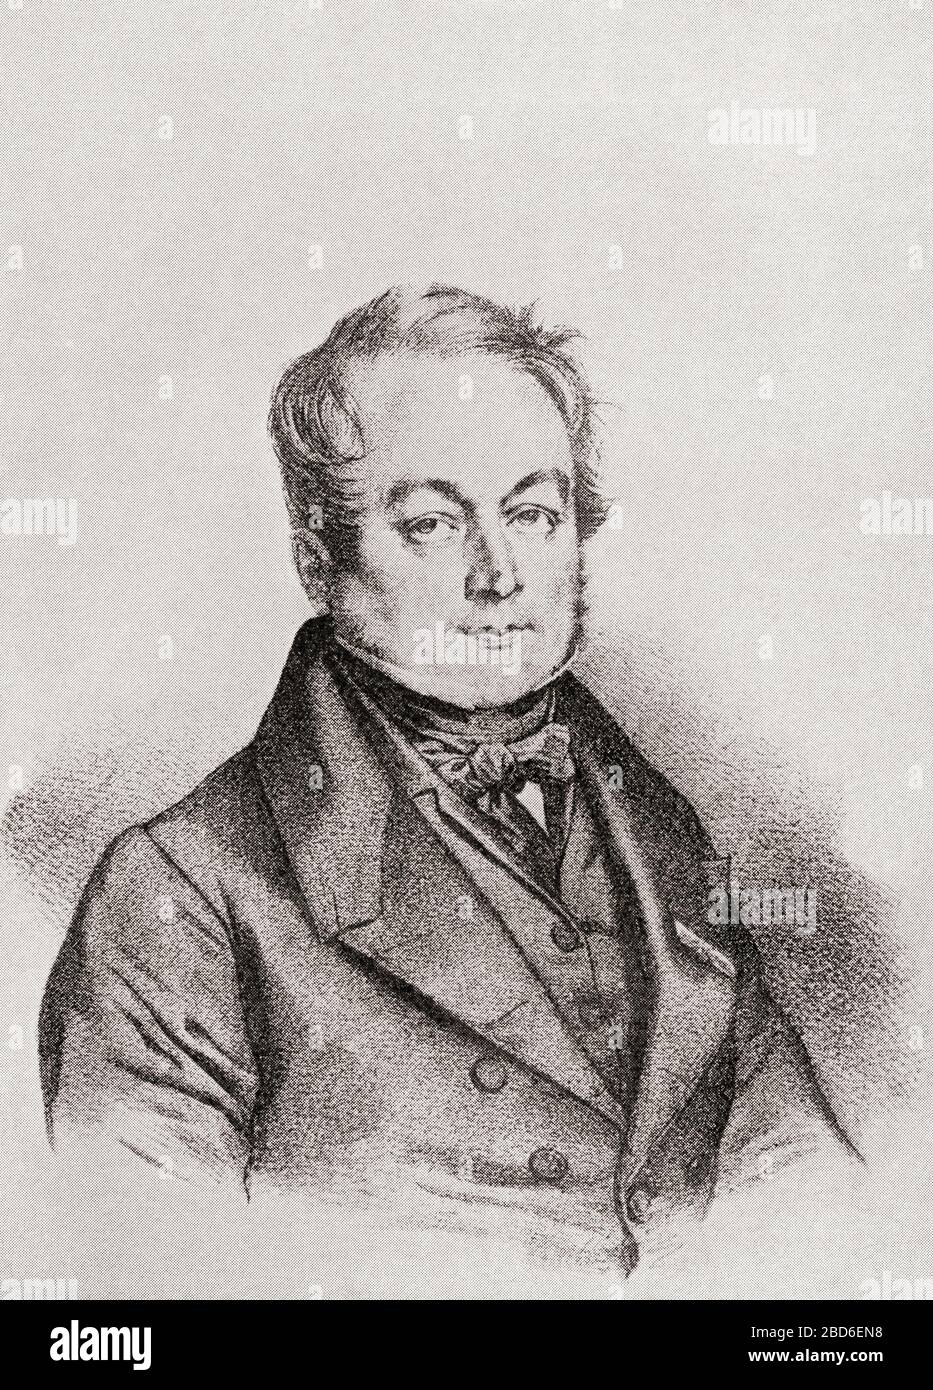 François Magendie, 1783 – 1855. Fisiologo francese, pioniere della fisiologia sperimentale. Da letture selezionate nella Storia della Fisiologia, pubblicato nel 1930. Foto Stock